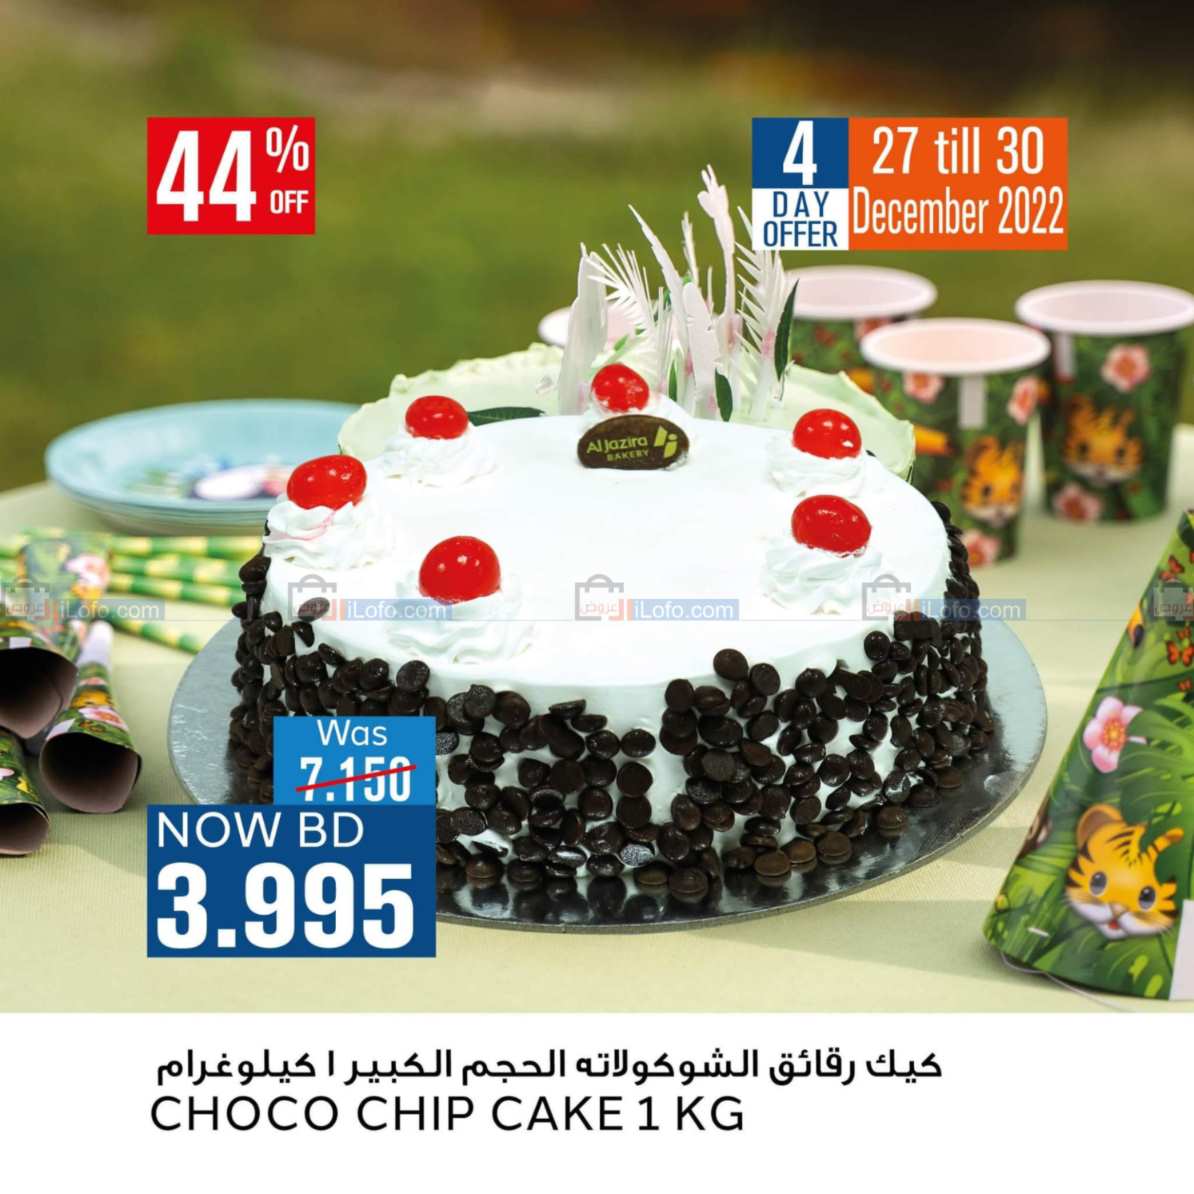 Page 2 at Happy New Year at Al jazira Supermarket Bahrain